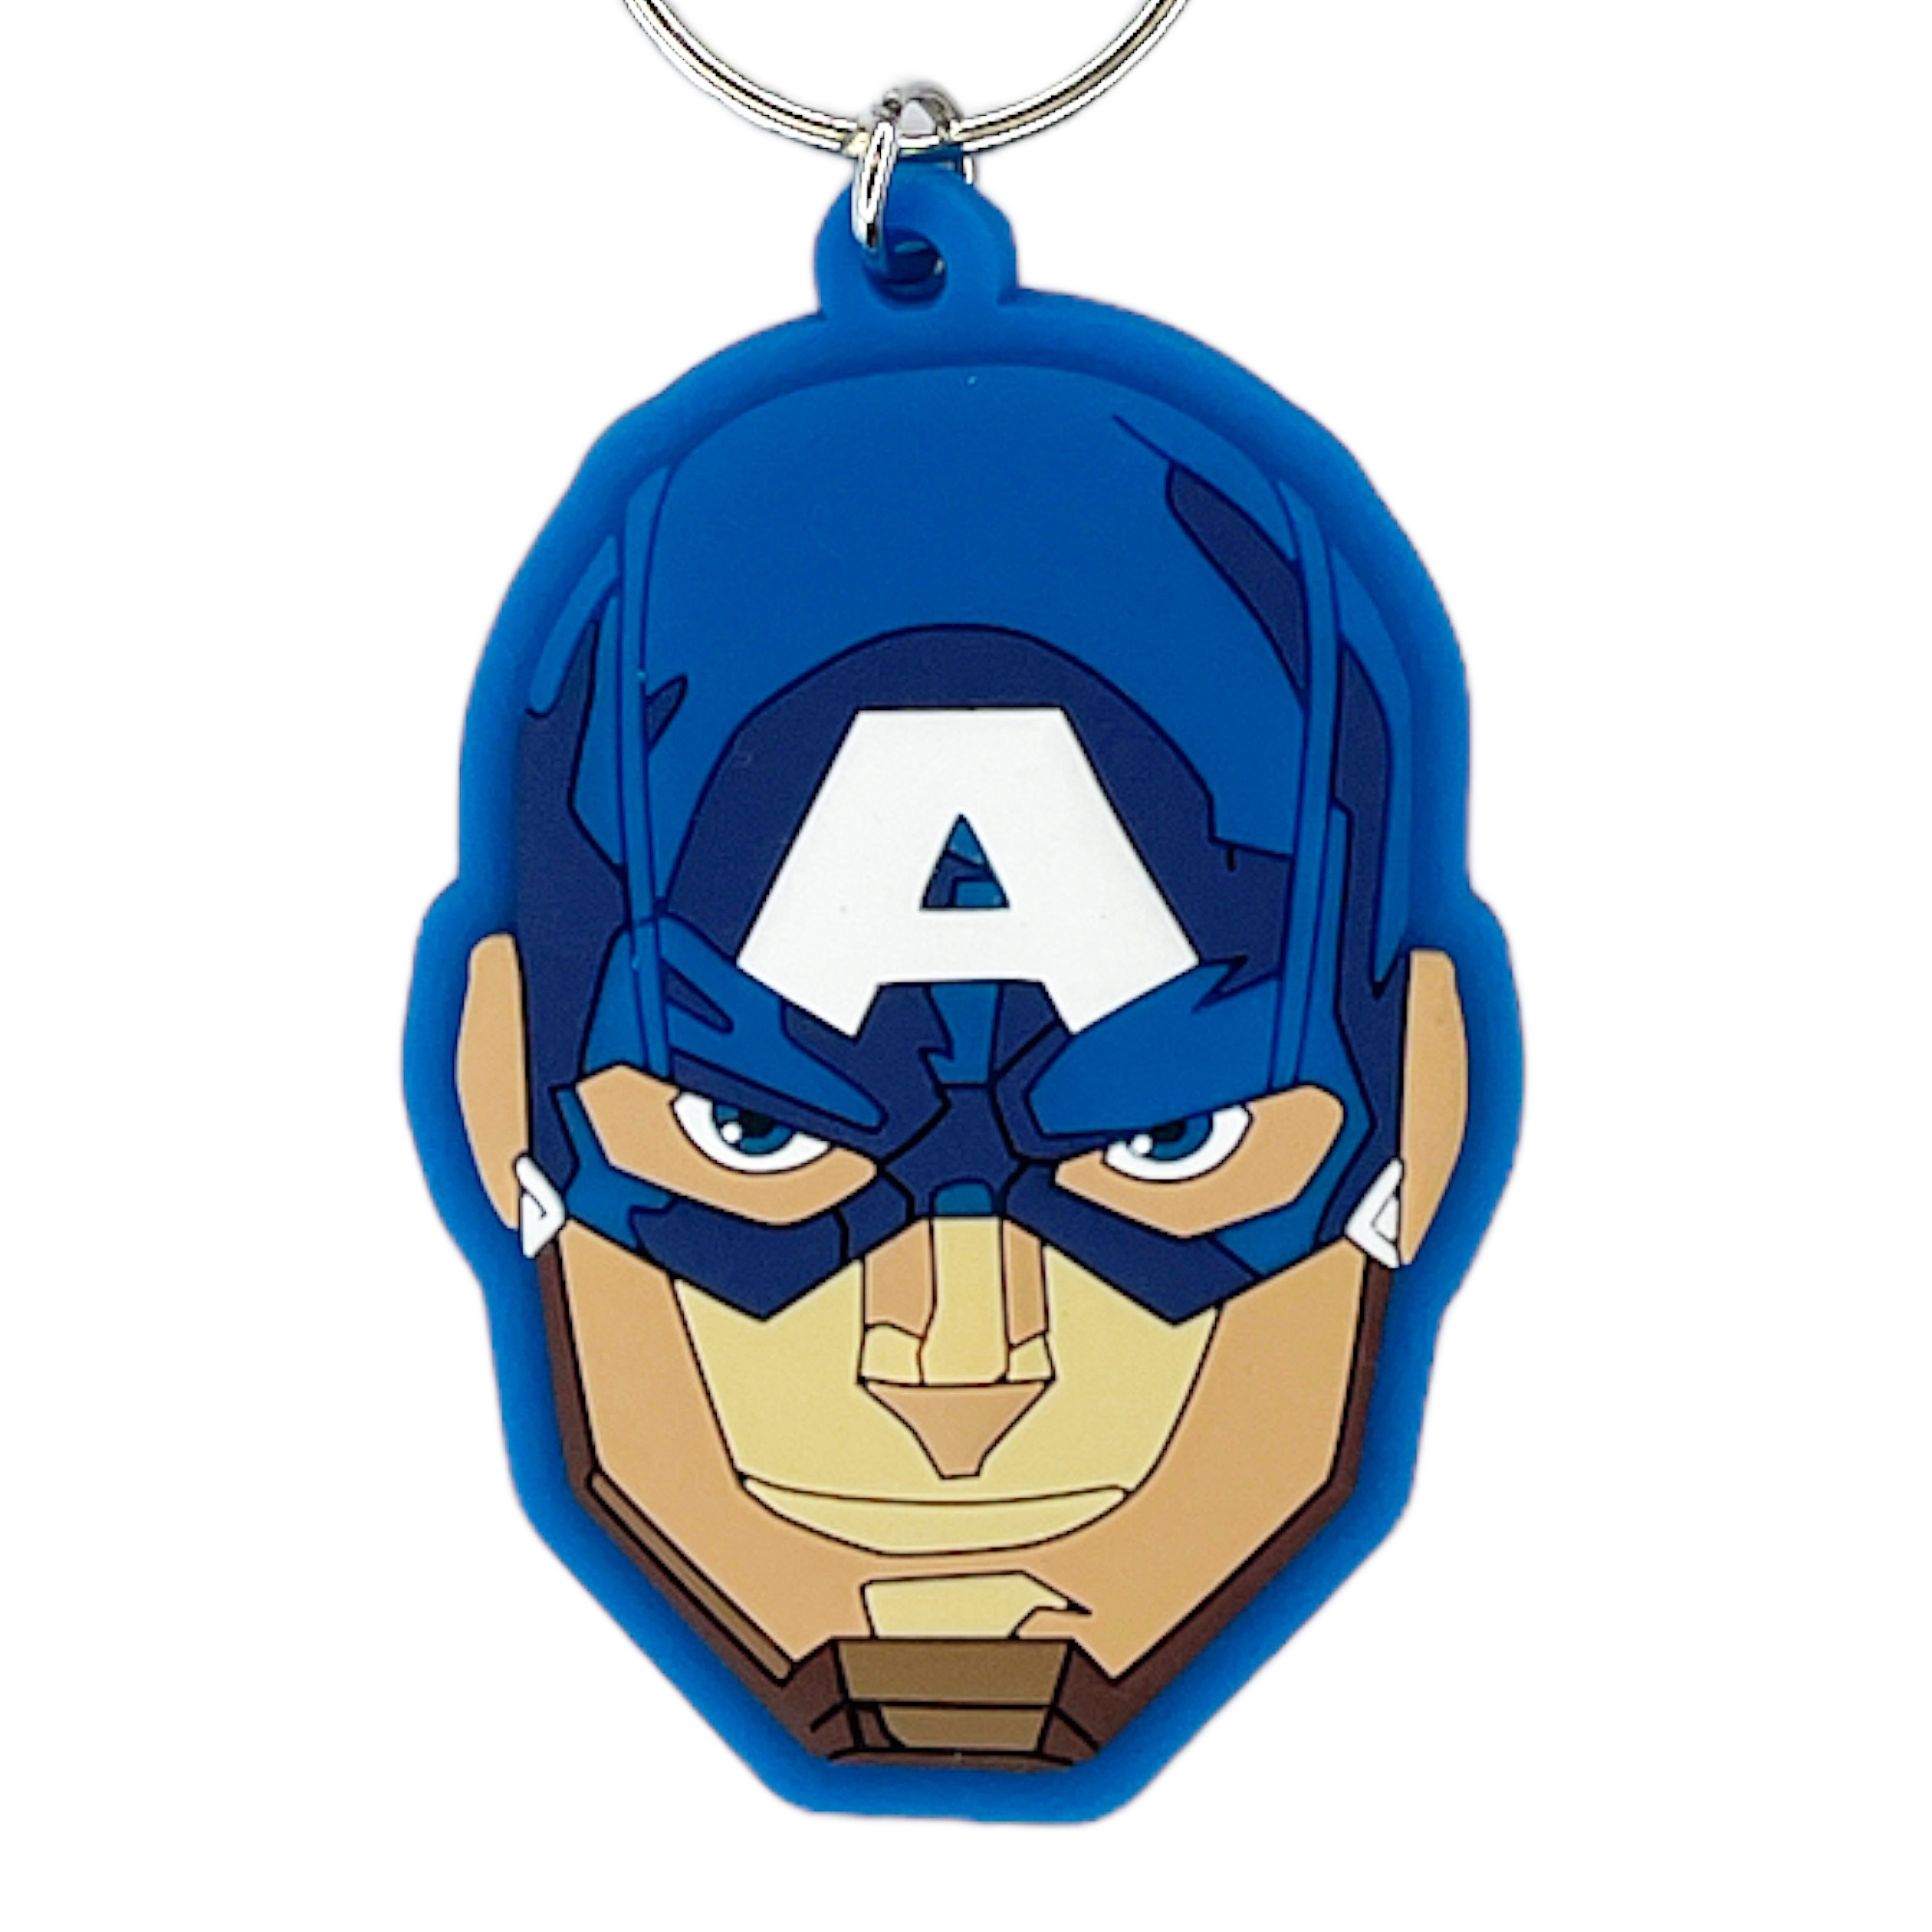 Captain America Gummi Schlüsselanhänger - Marvel